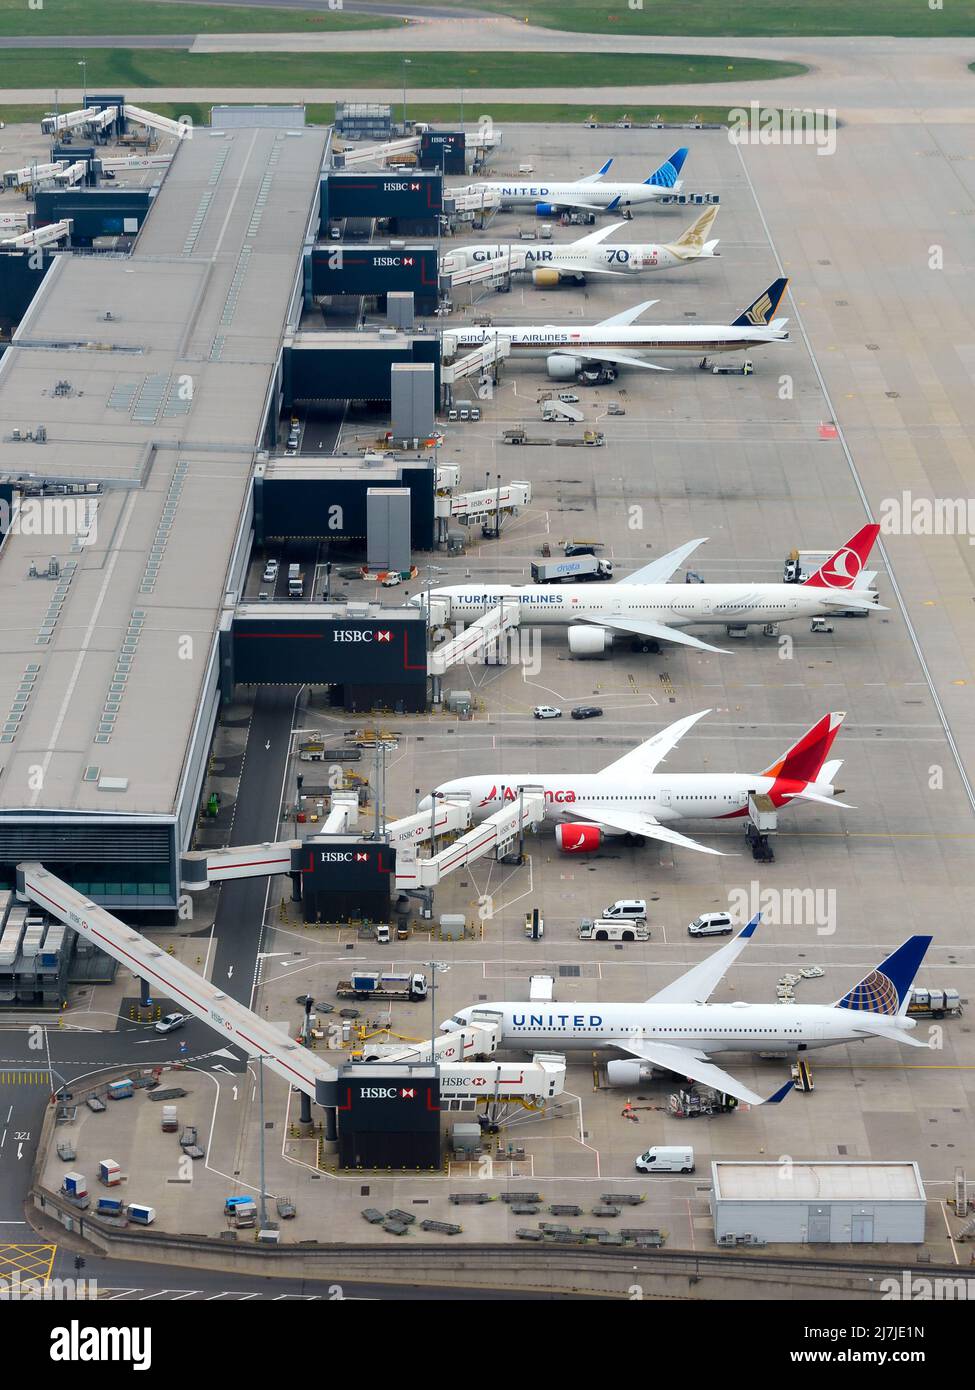 Heathrow Airport Terminal 2 Luftaufnahme, auch bekannt als Queen's Terminal. Vielbeschäftigter Flughafenterminal in Großbritannien mit mehreren Flugzeugen. Stockfoto